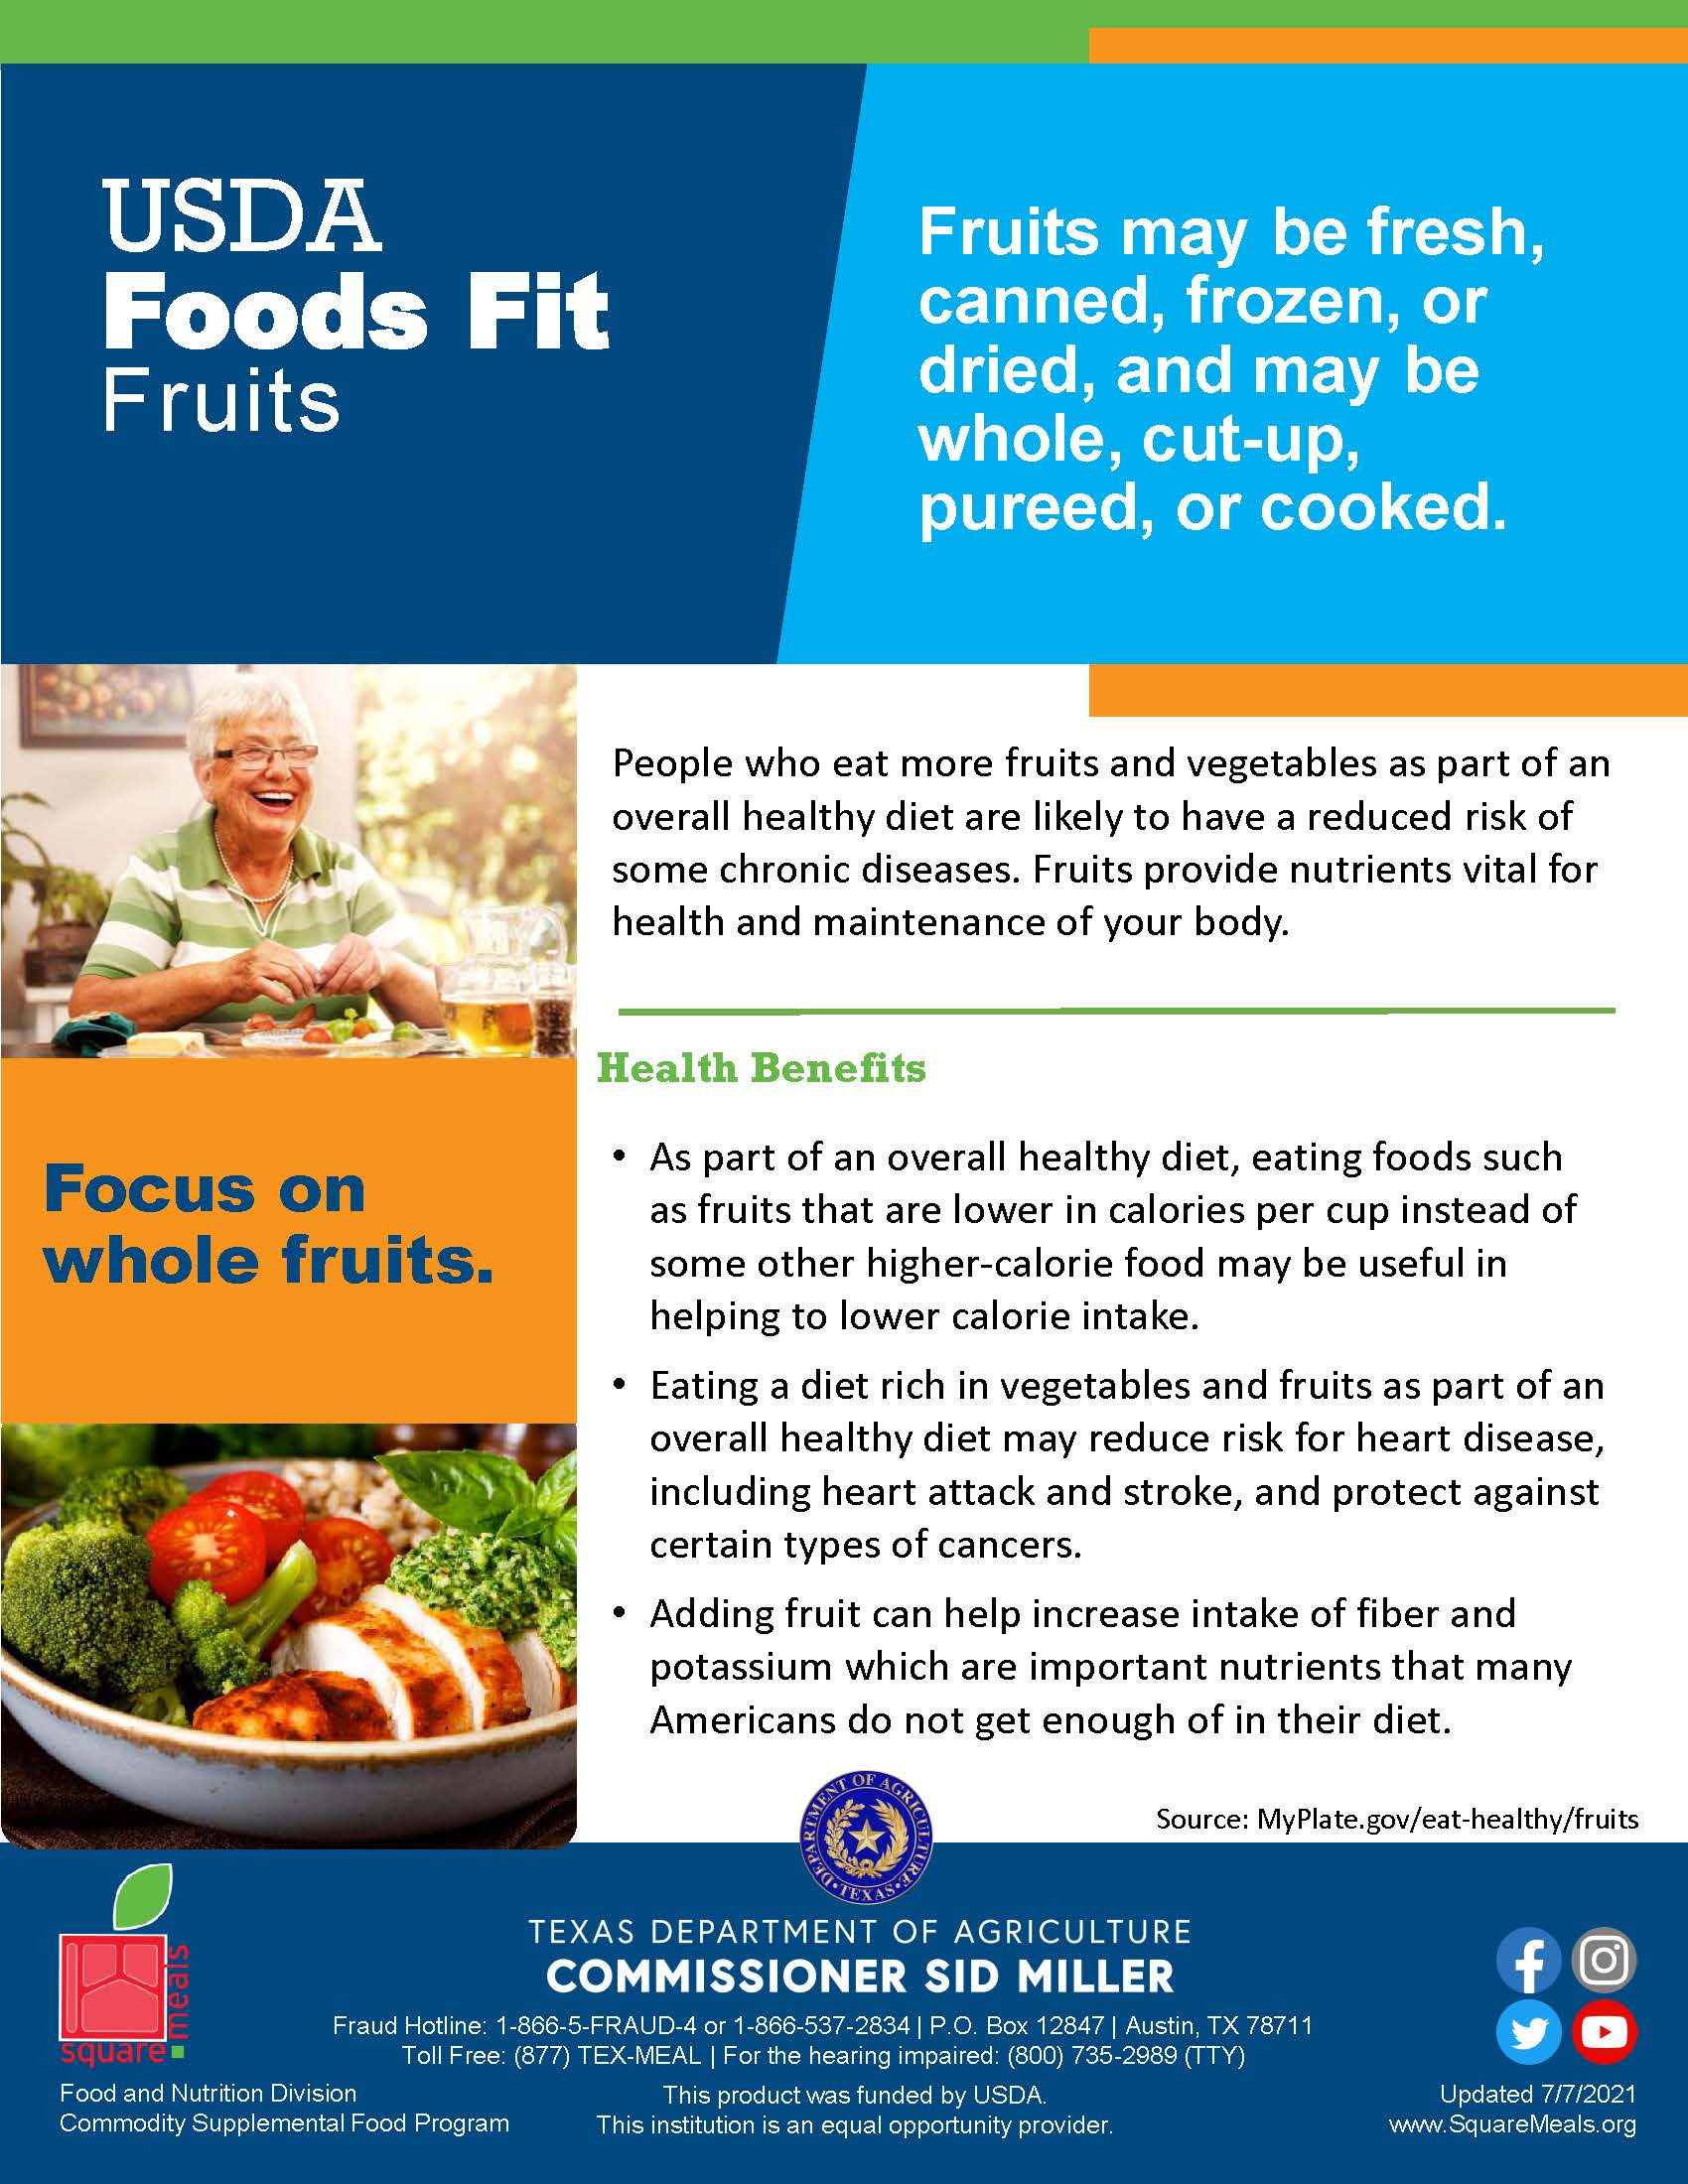 USDA Foods Fit - Fruits